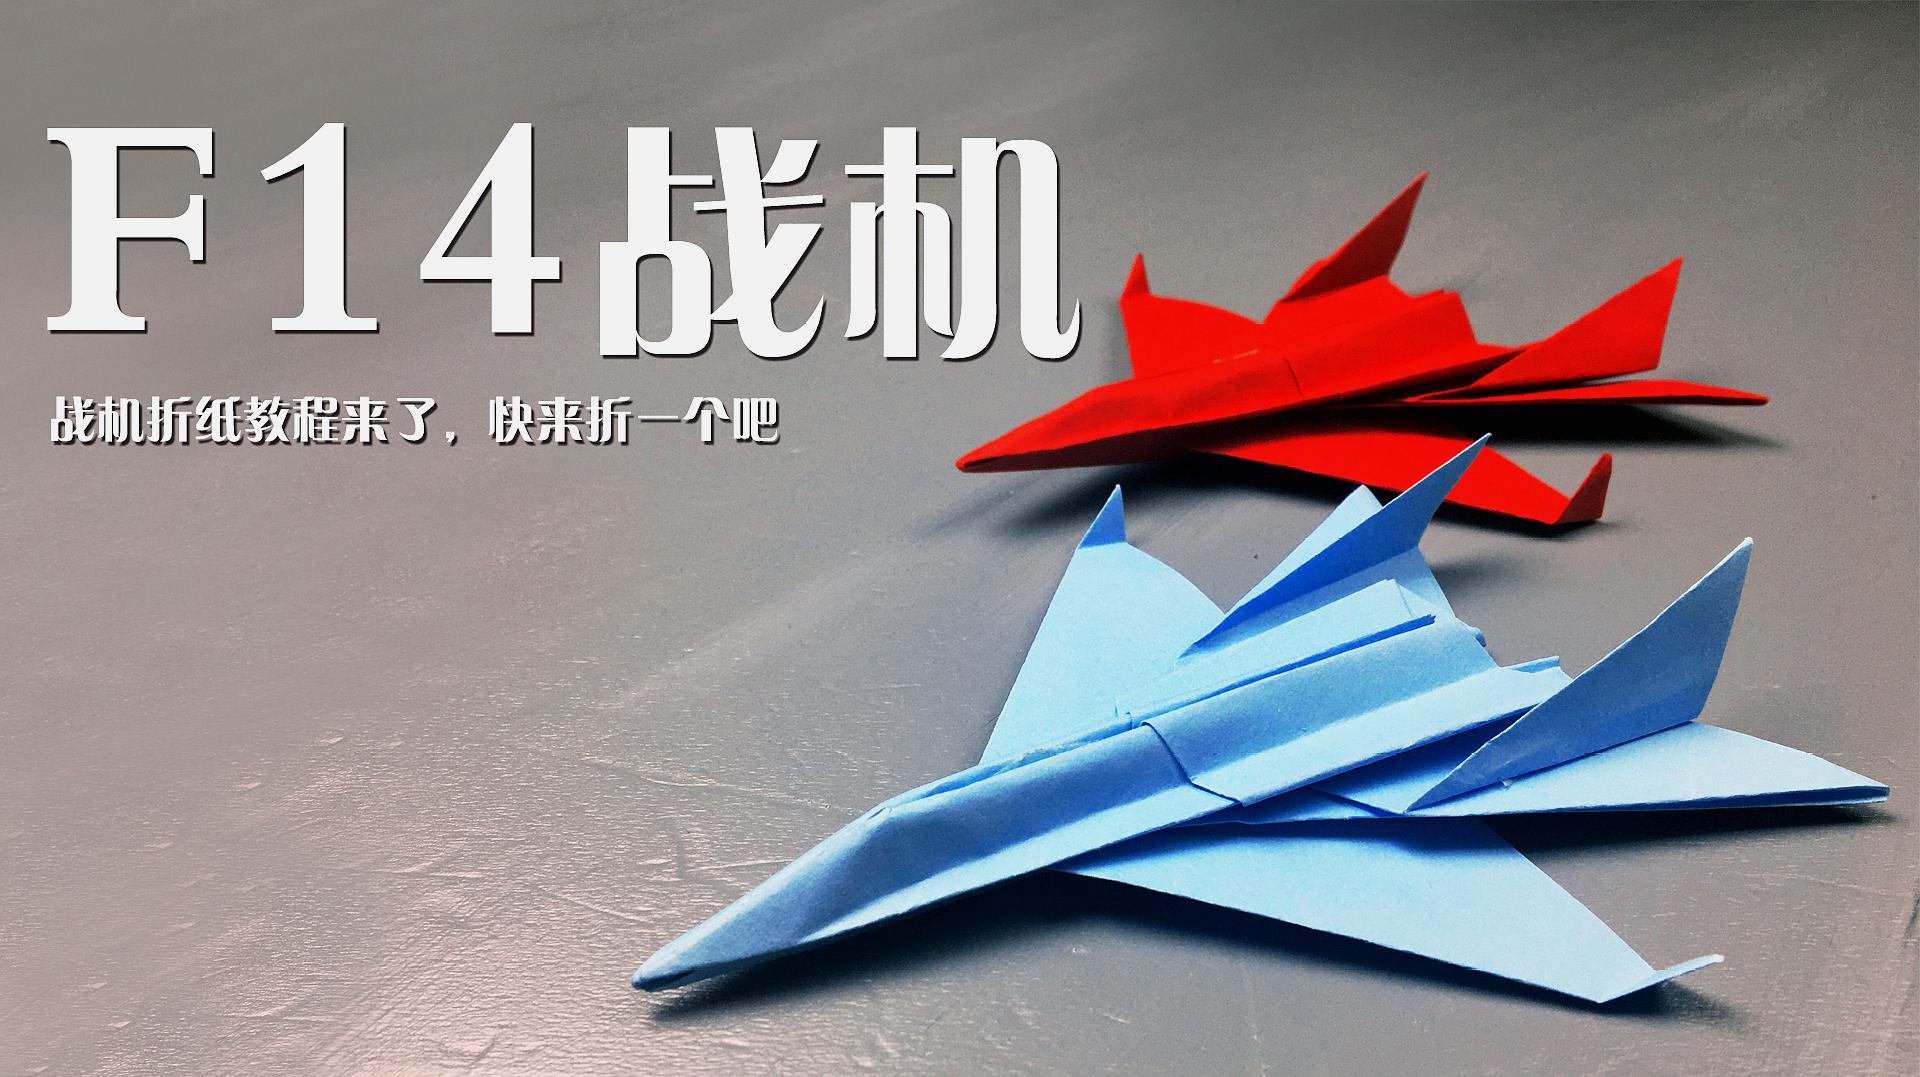 3分钟1张纸,打造纯手工豪华f14战斗机的折纸教程!